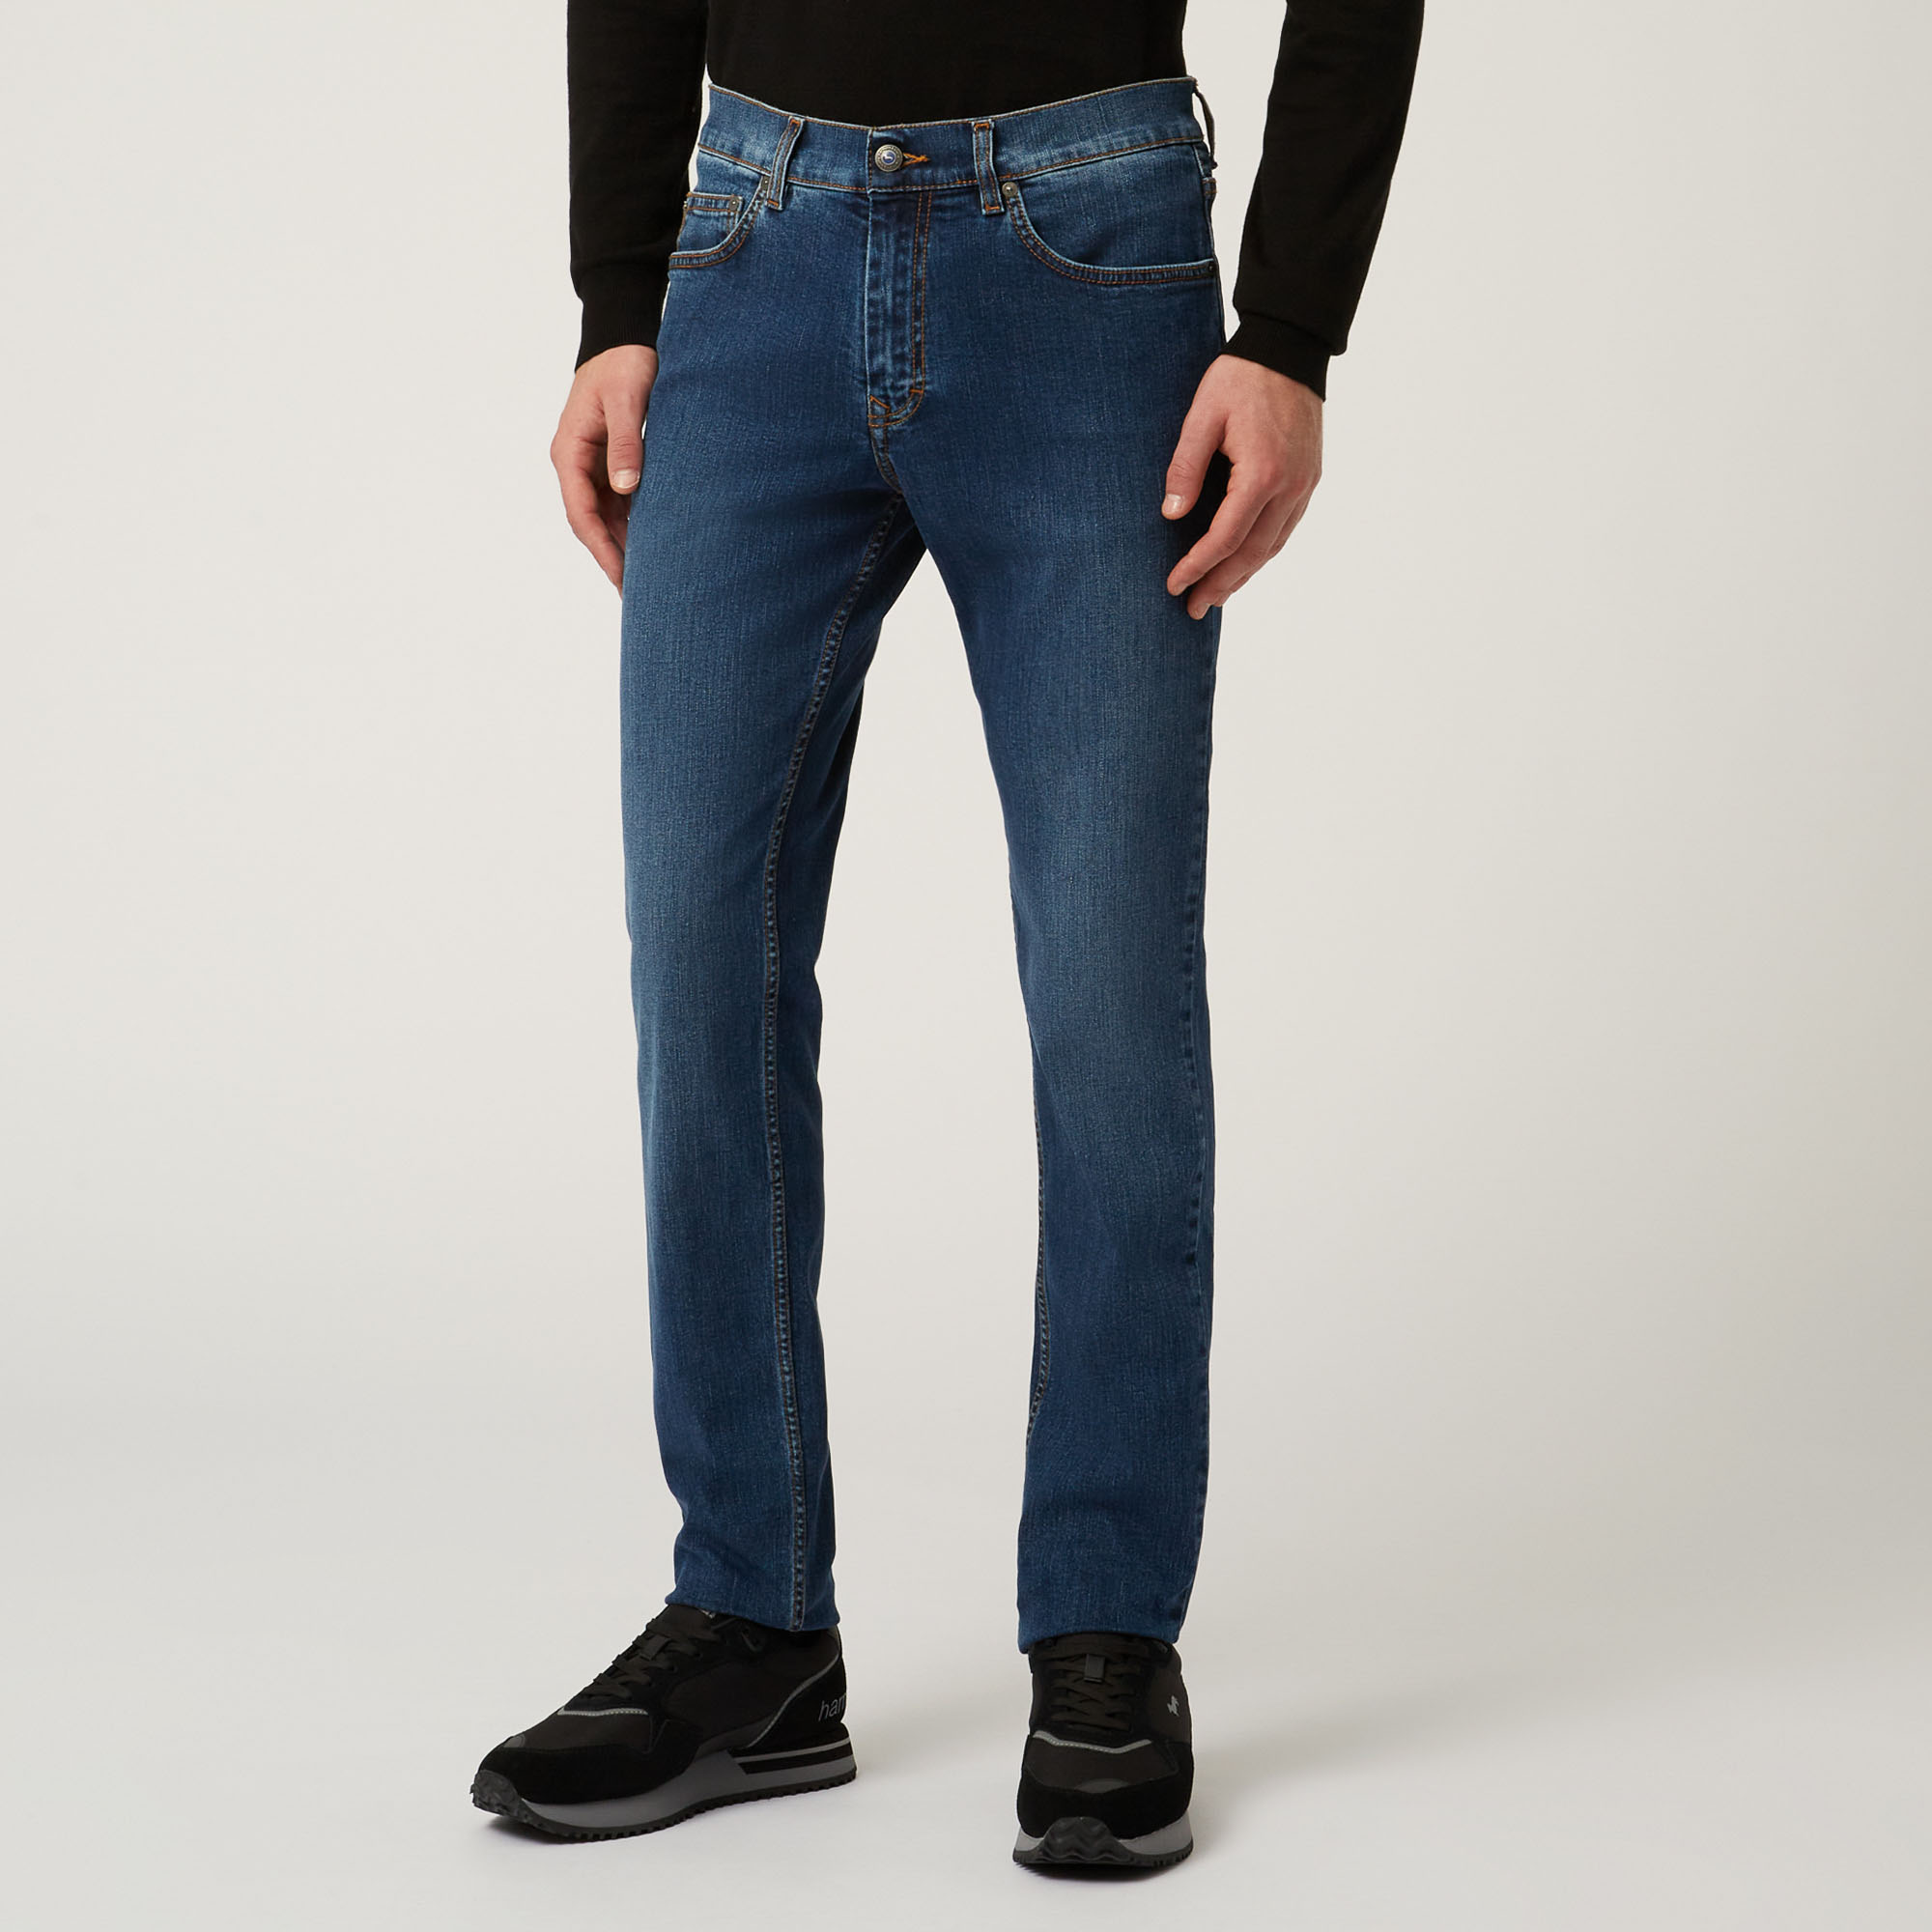 Essentials 5 pocket denim jeans, Blue, large